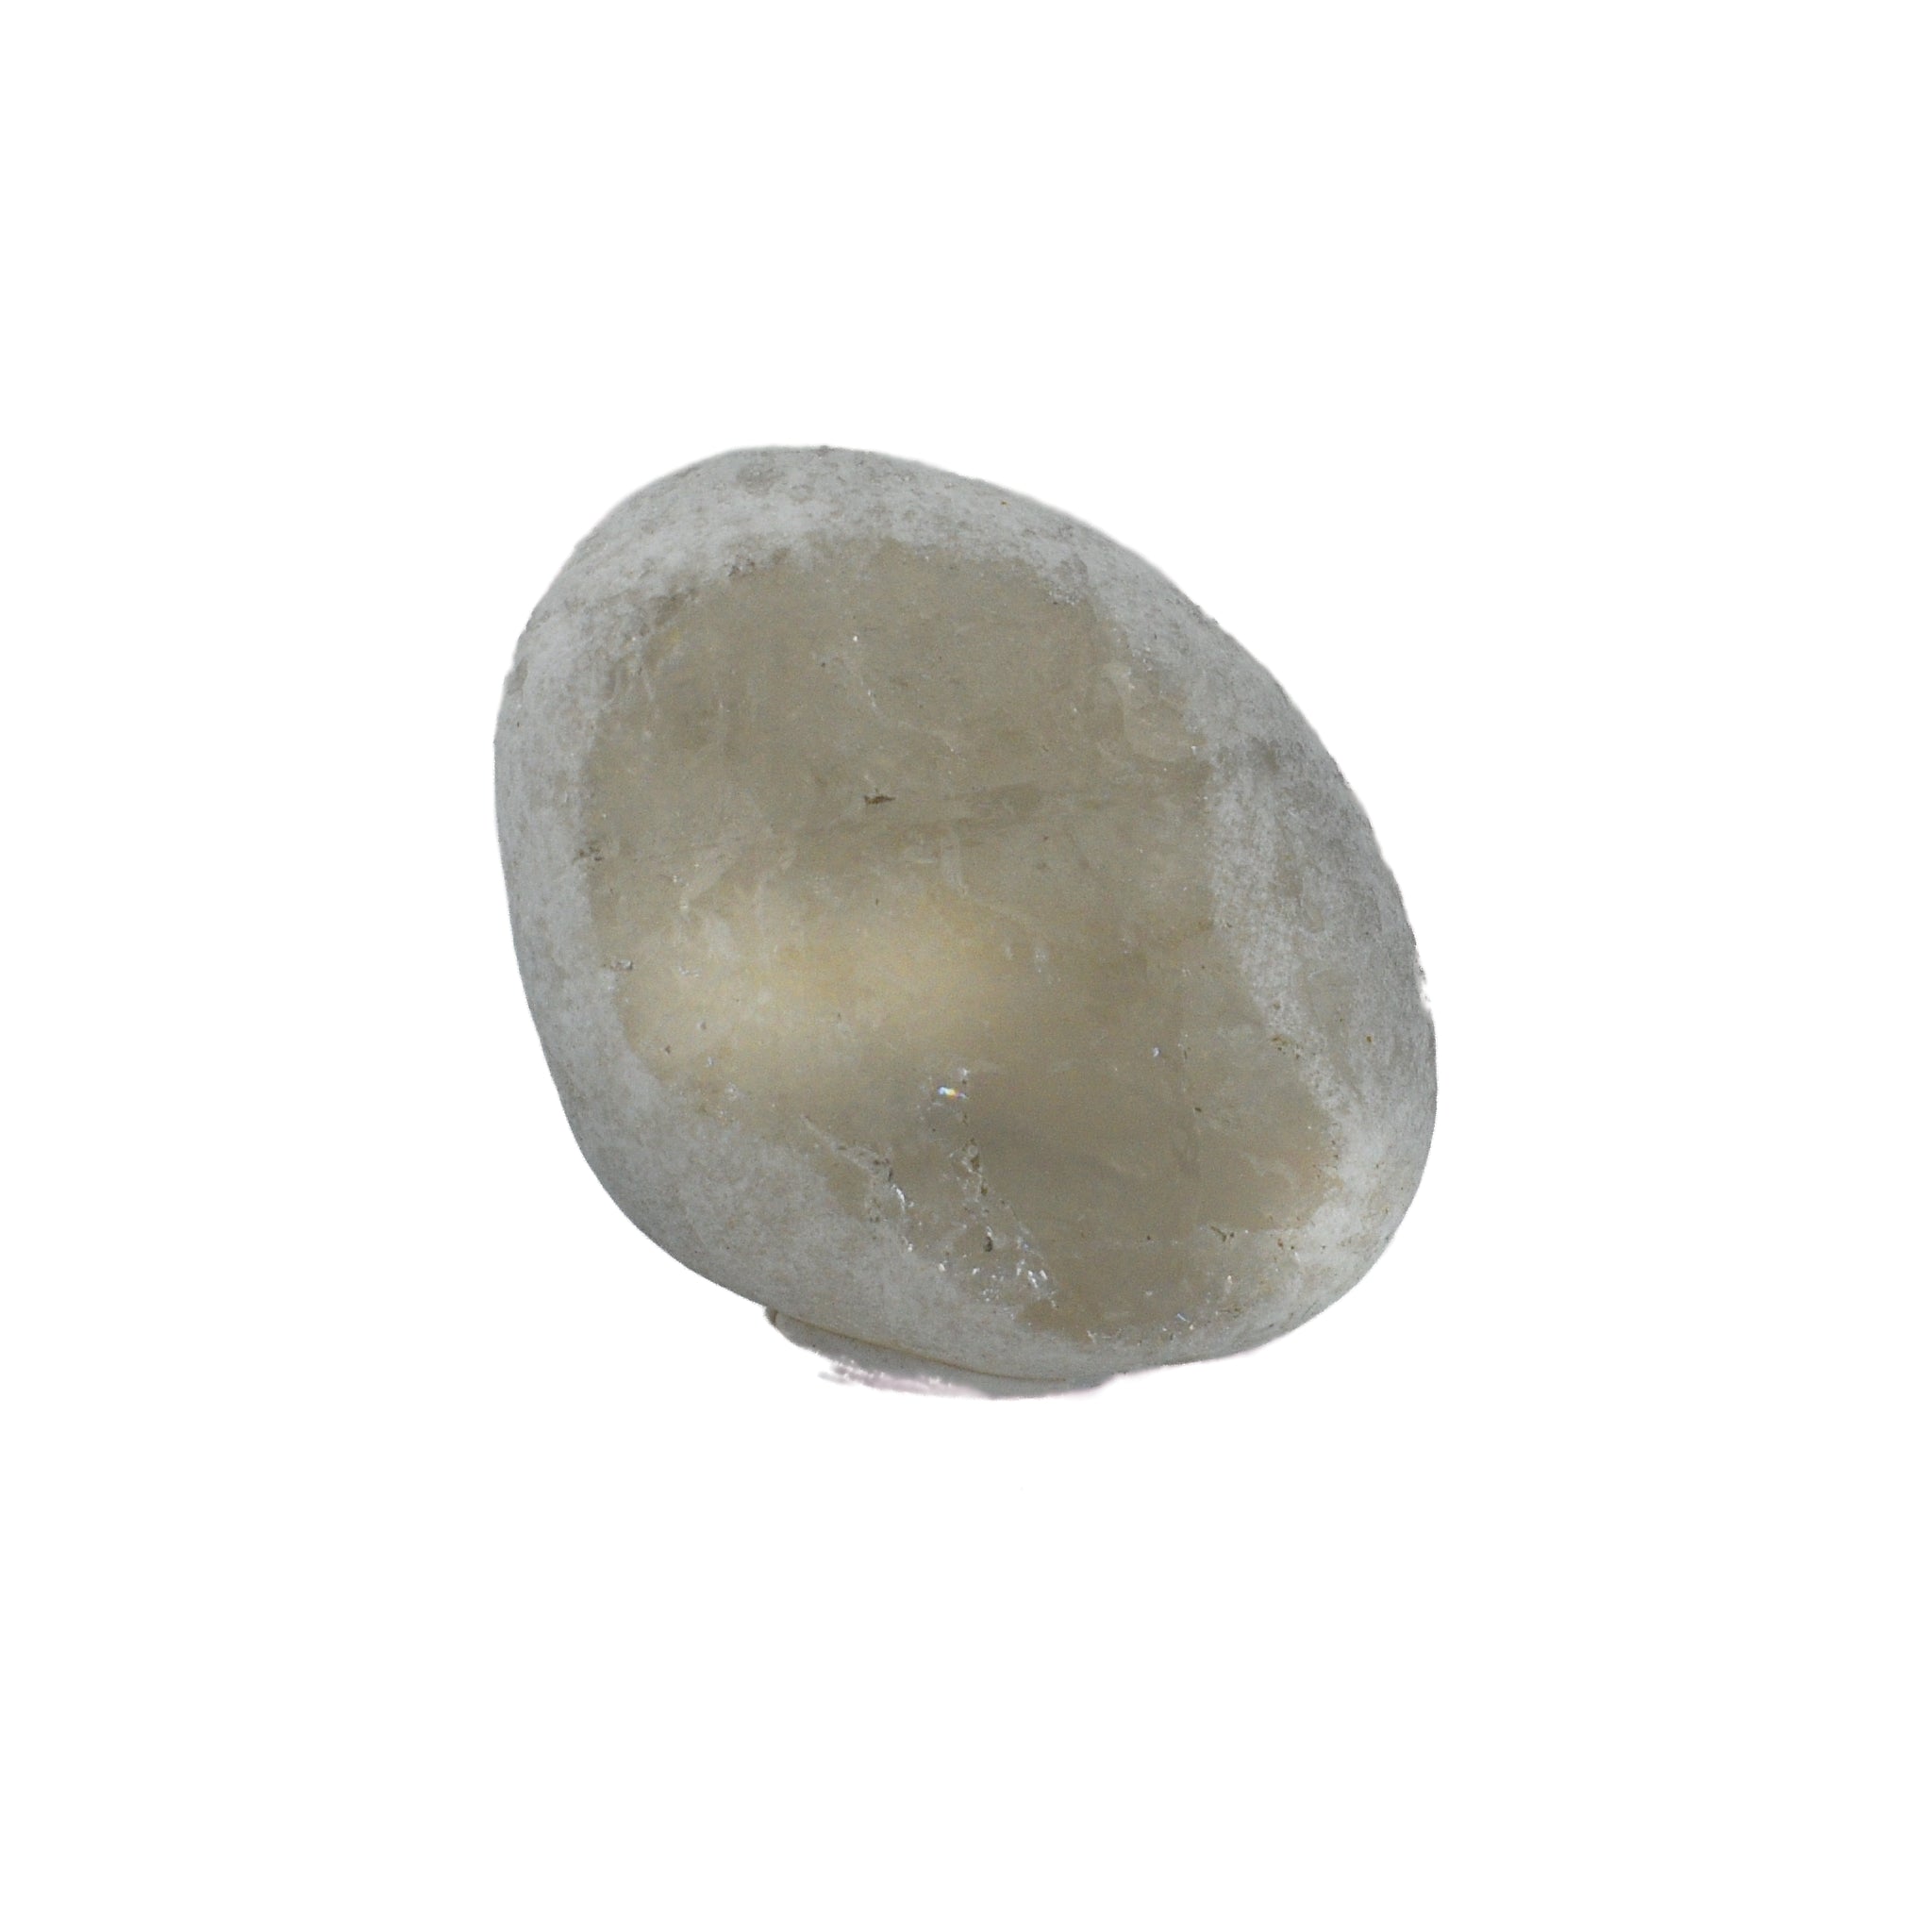 Frosty white roundish crystal